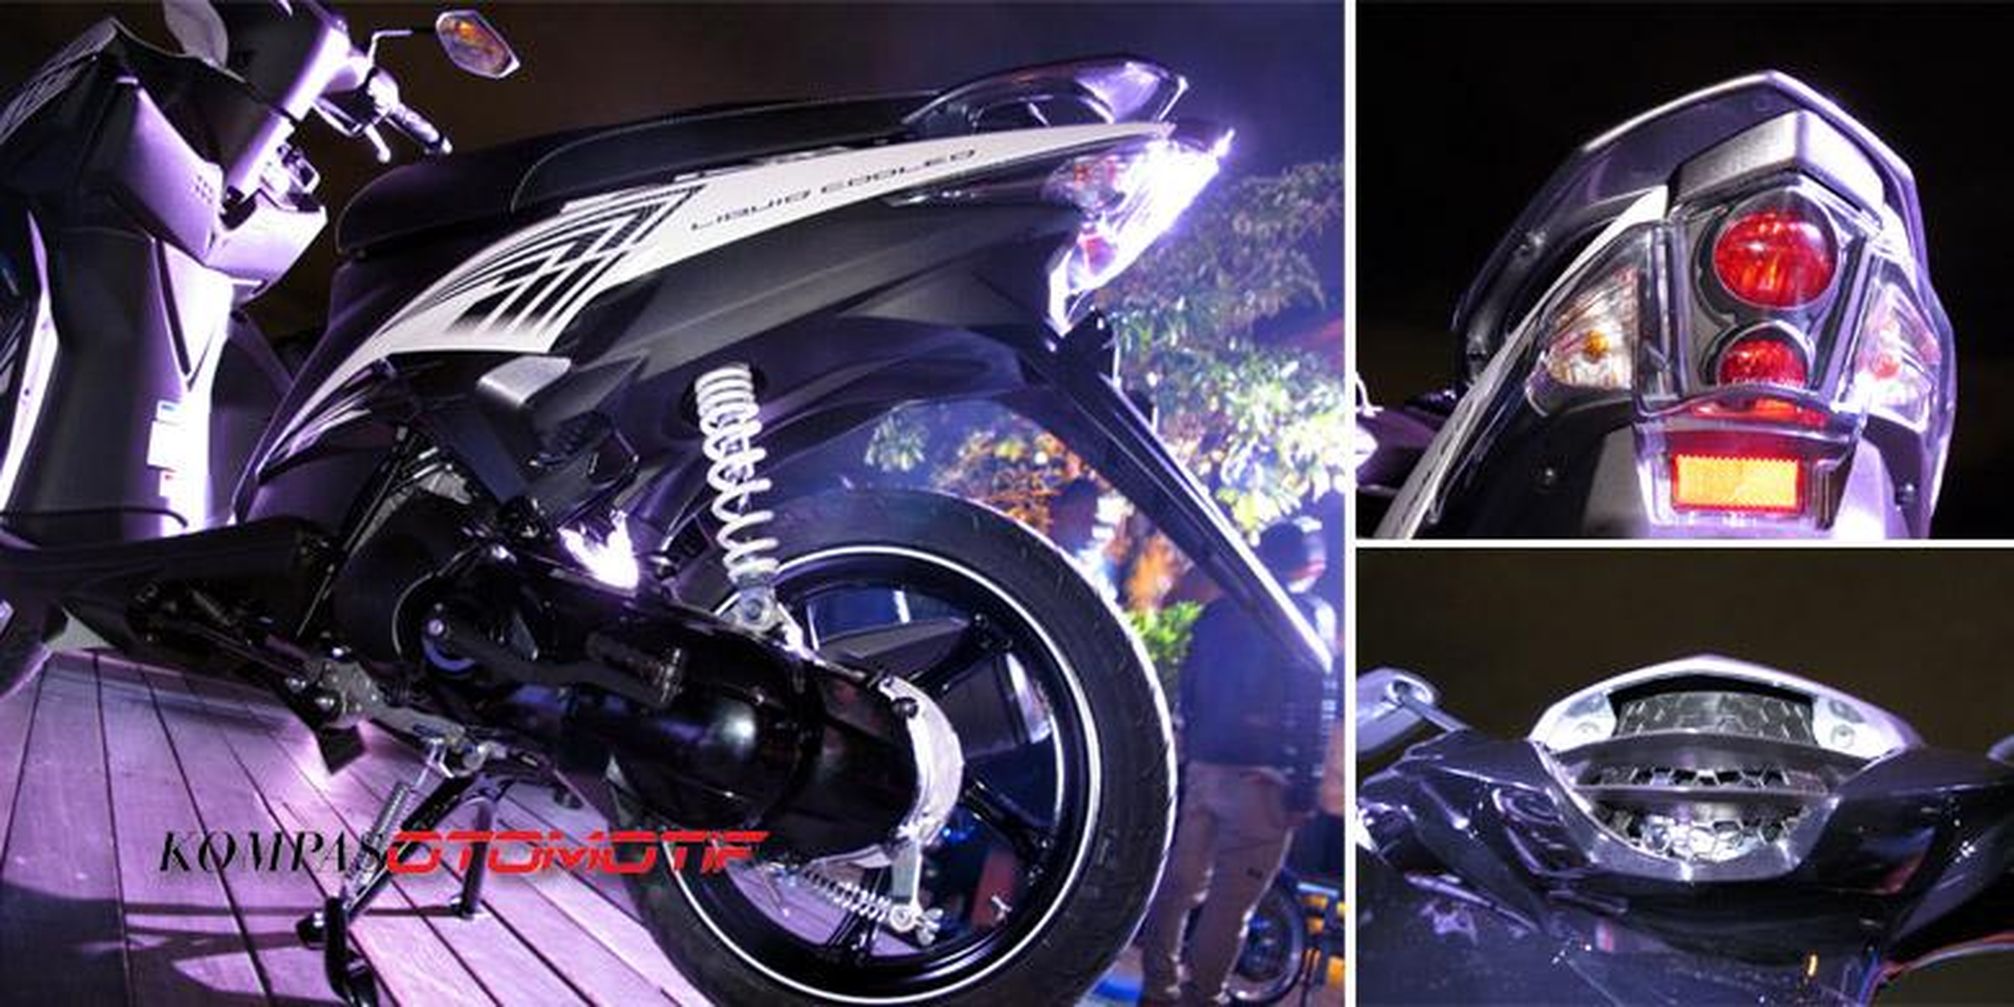 Yamaha GT125 Jeroan Xeon Tampang Gado Gado